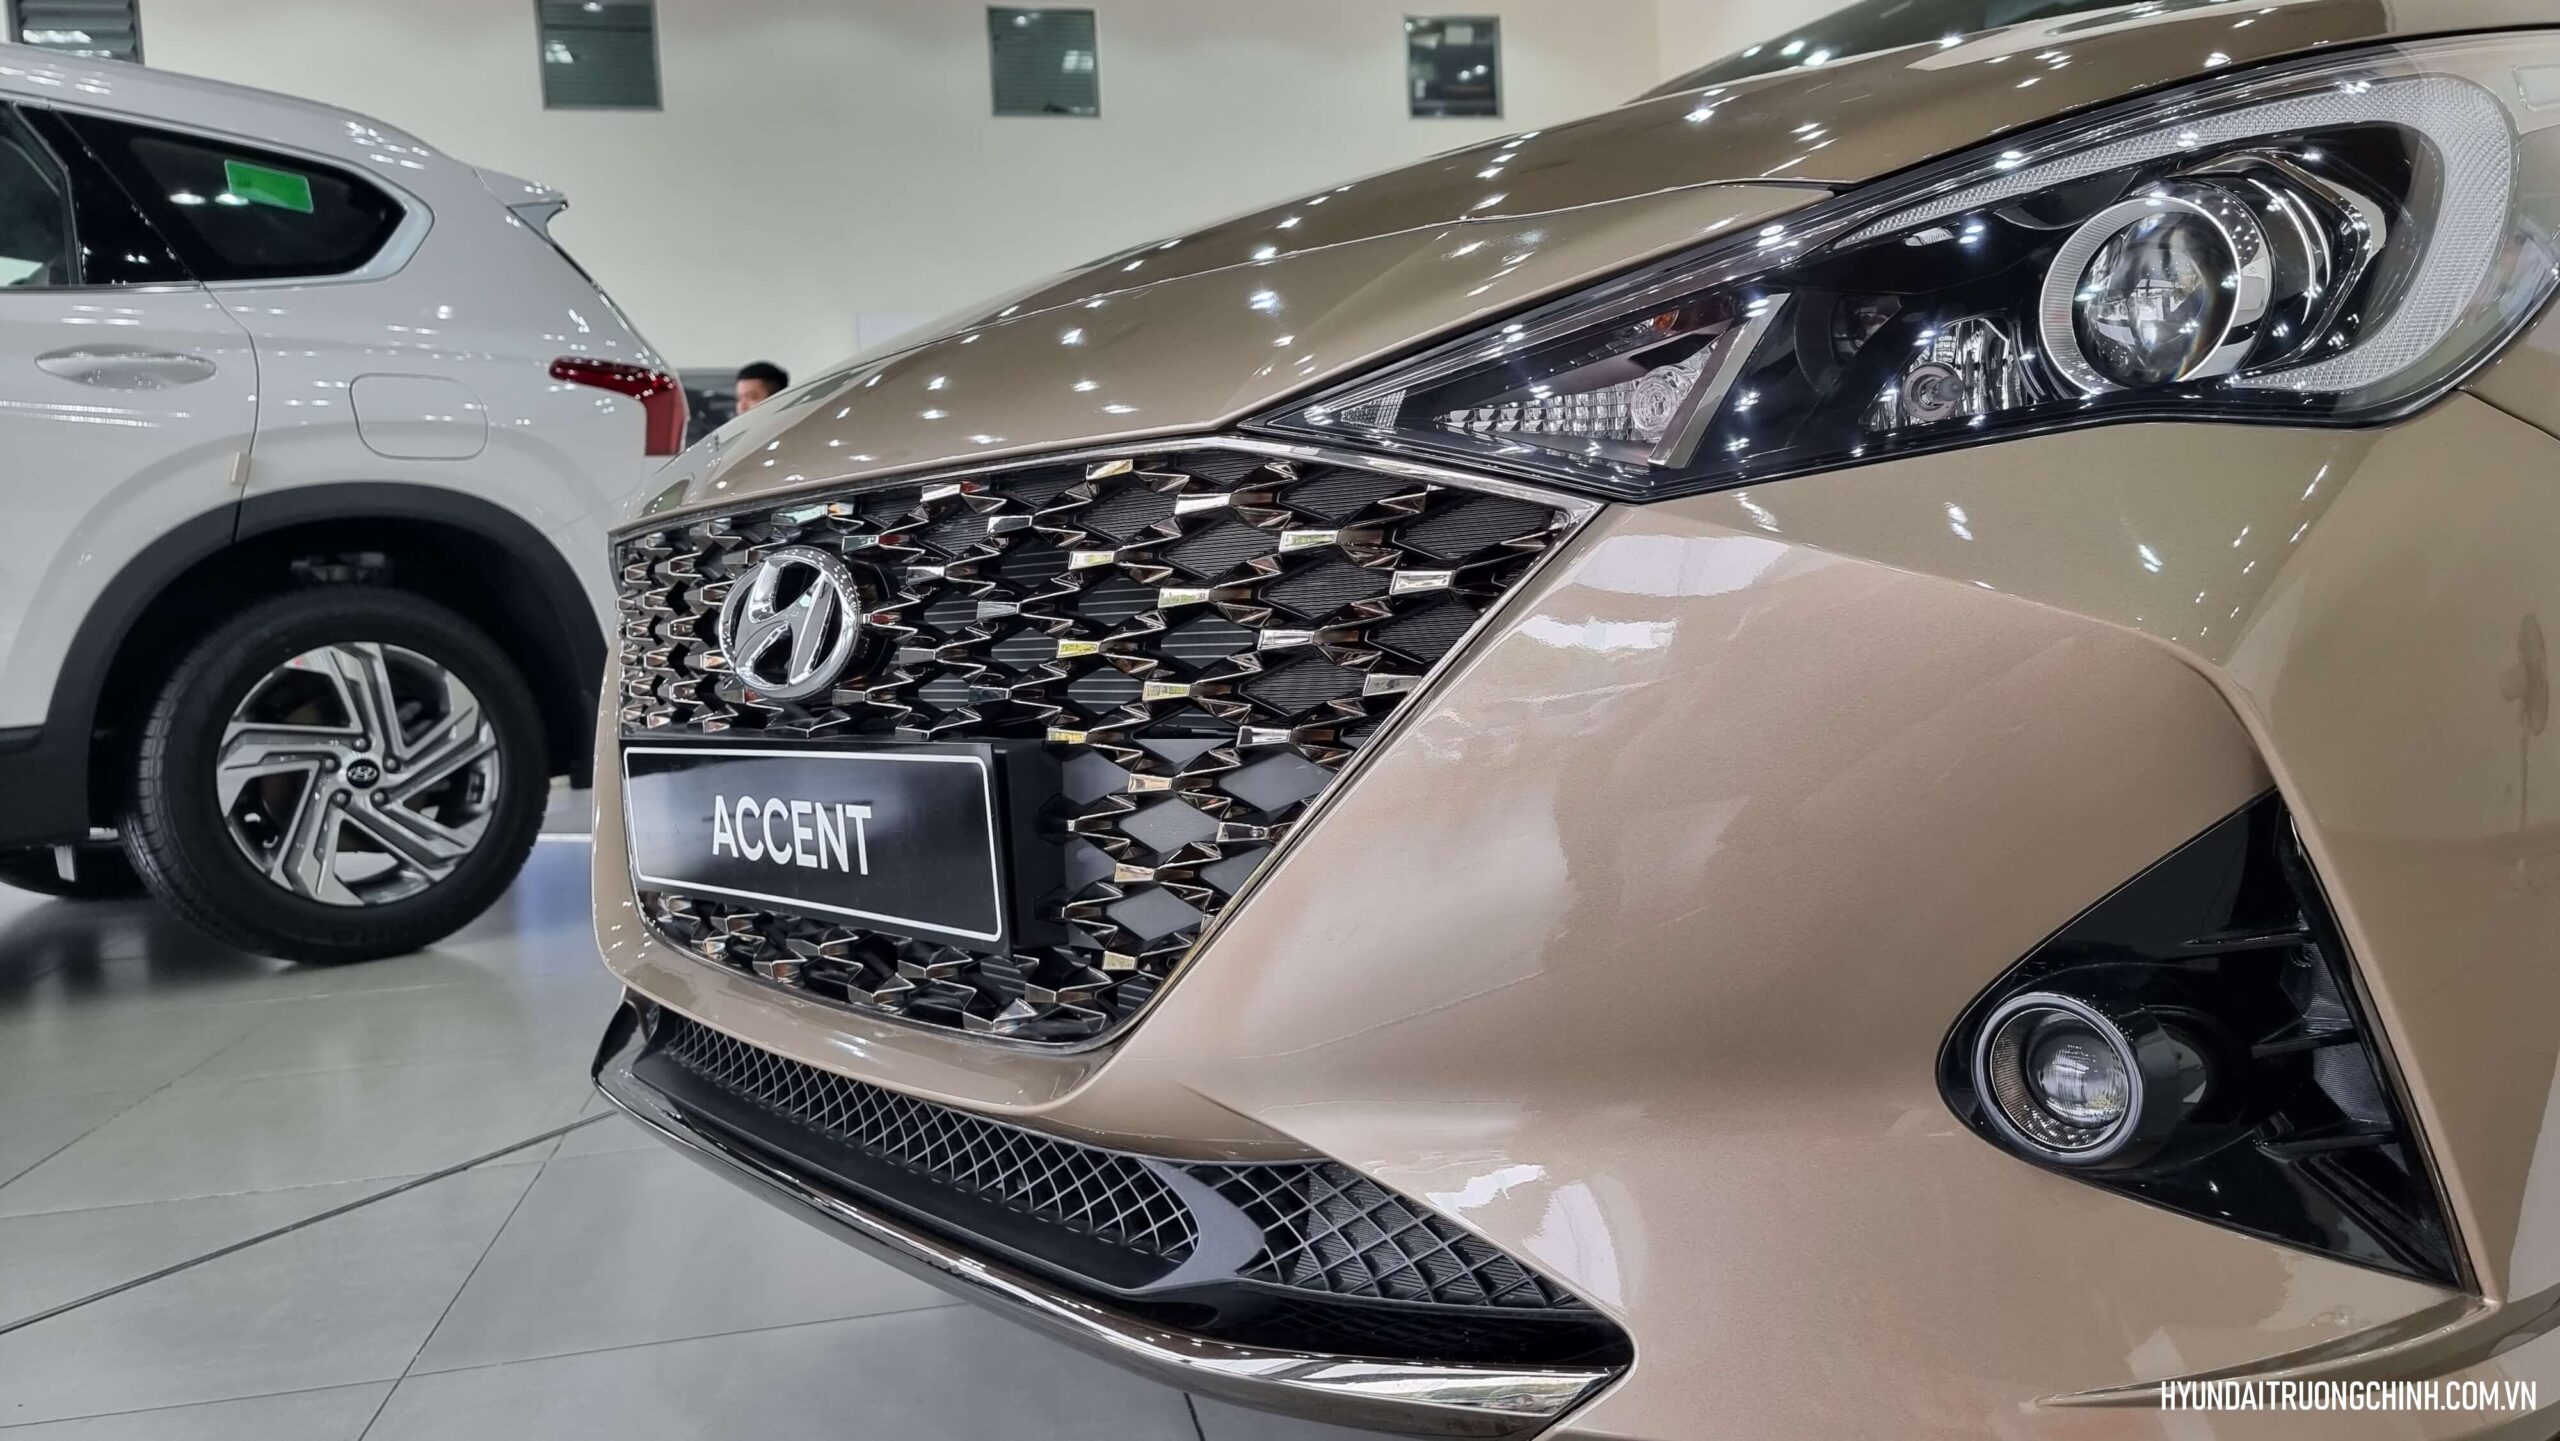 Hyundai Accent 2024 | Lưới tản nhiệt của Hyundai Accent 2024 được thiết kế mới với hoạ tiết hình thoi, phủ một lớp chrome màu khói.